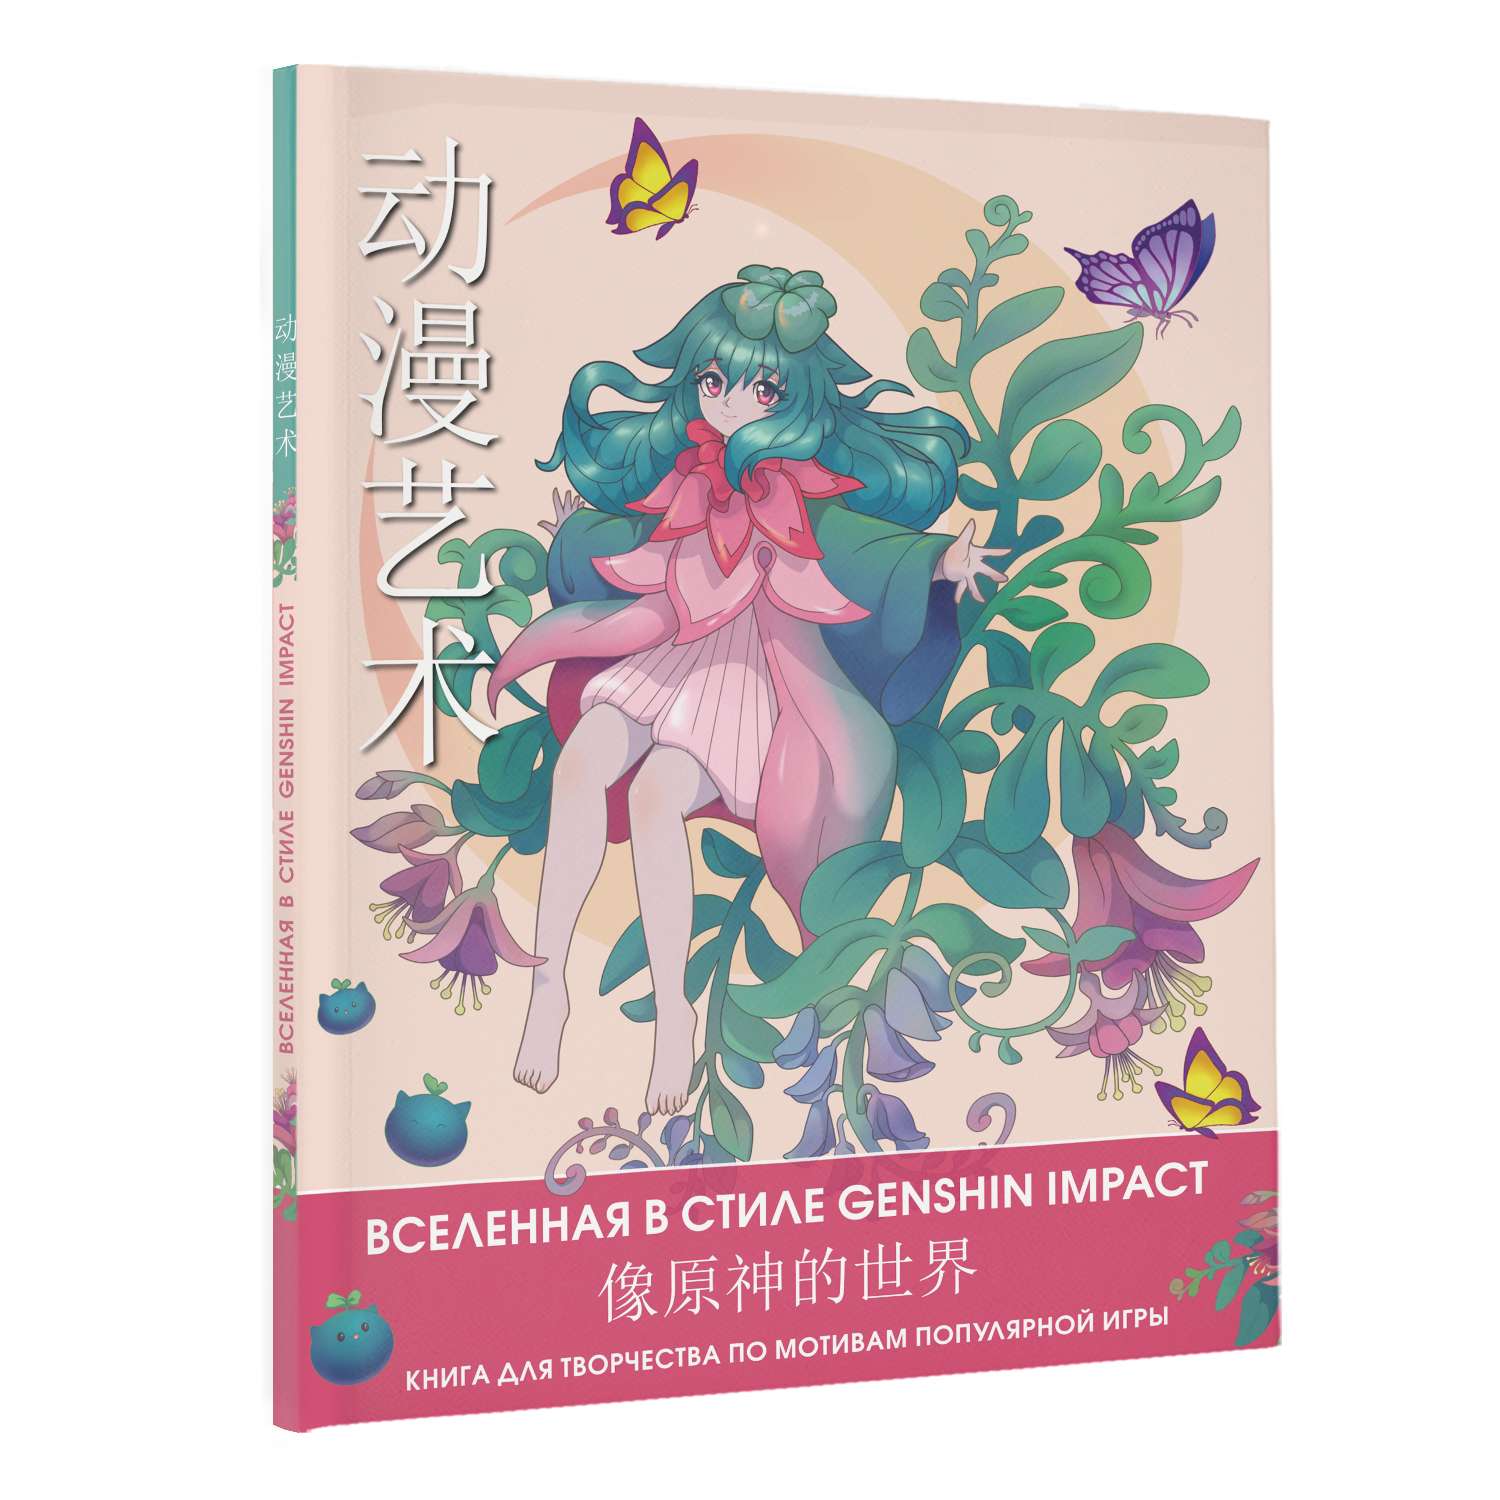 Раскраска Anime Art Вселенная в стиле Genshin Impact Книга для творчества по мотивам популярной игры - фото 2